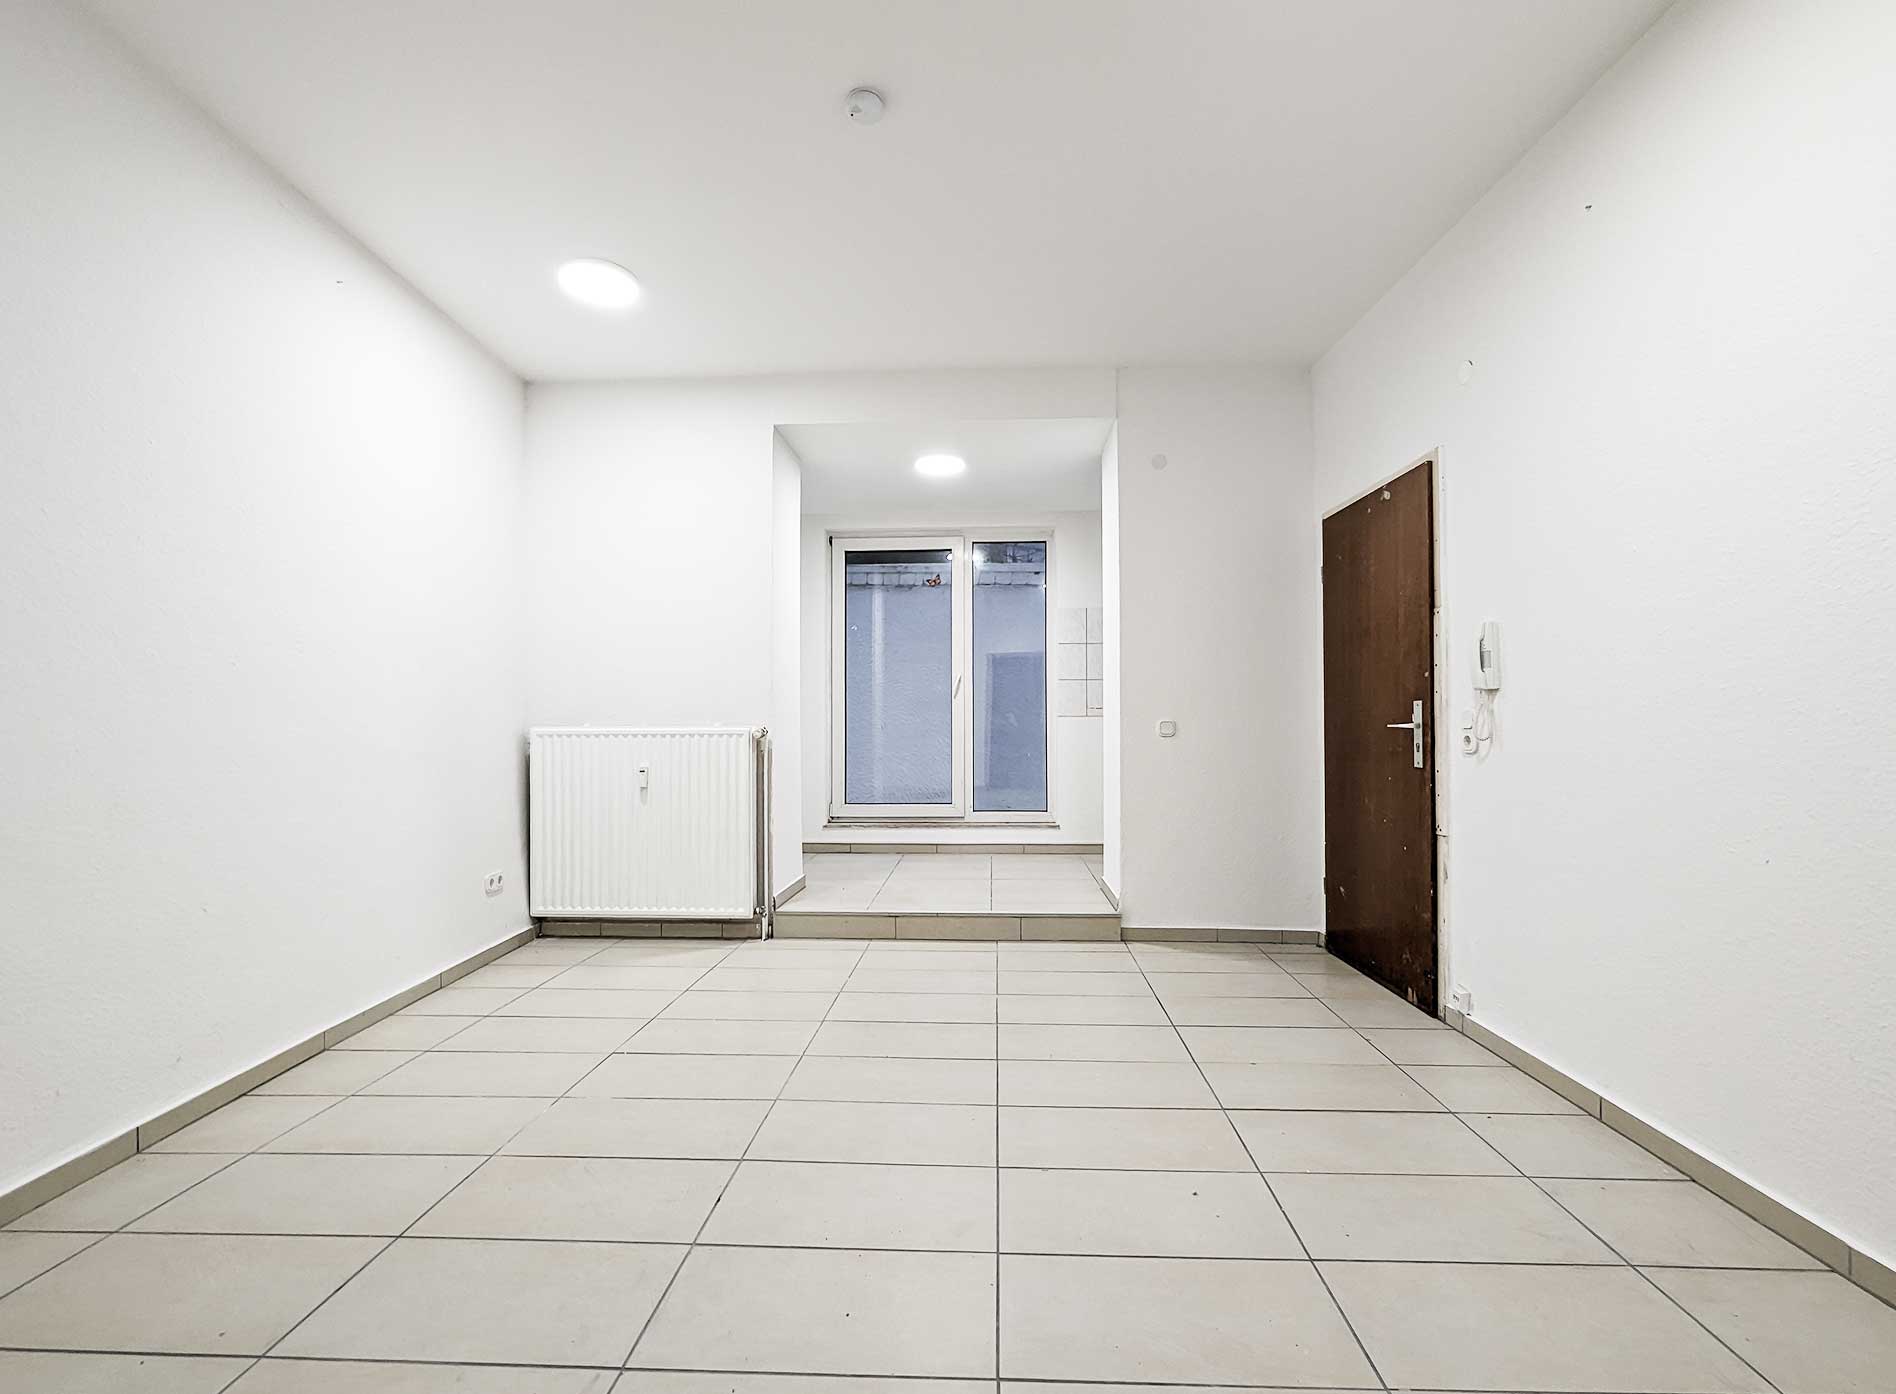 Zimmer in Wohnung Aachen in der Jakobstraße zu vermieten über Koch Immobilien